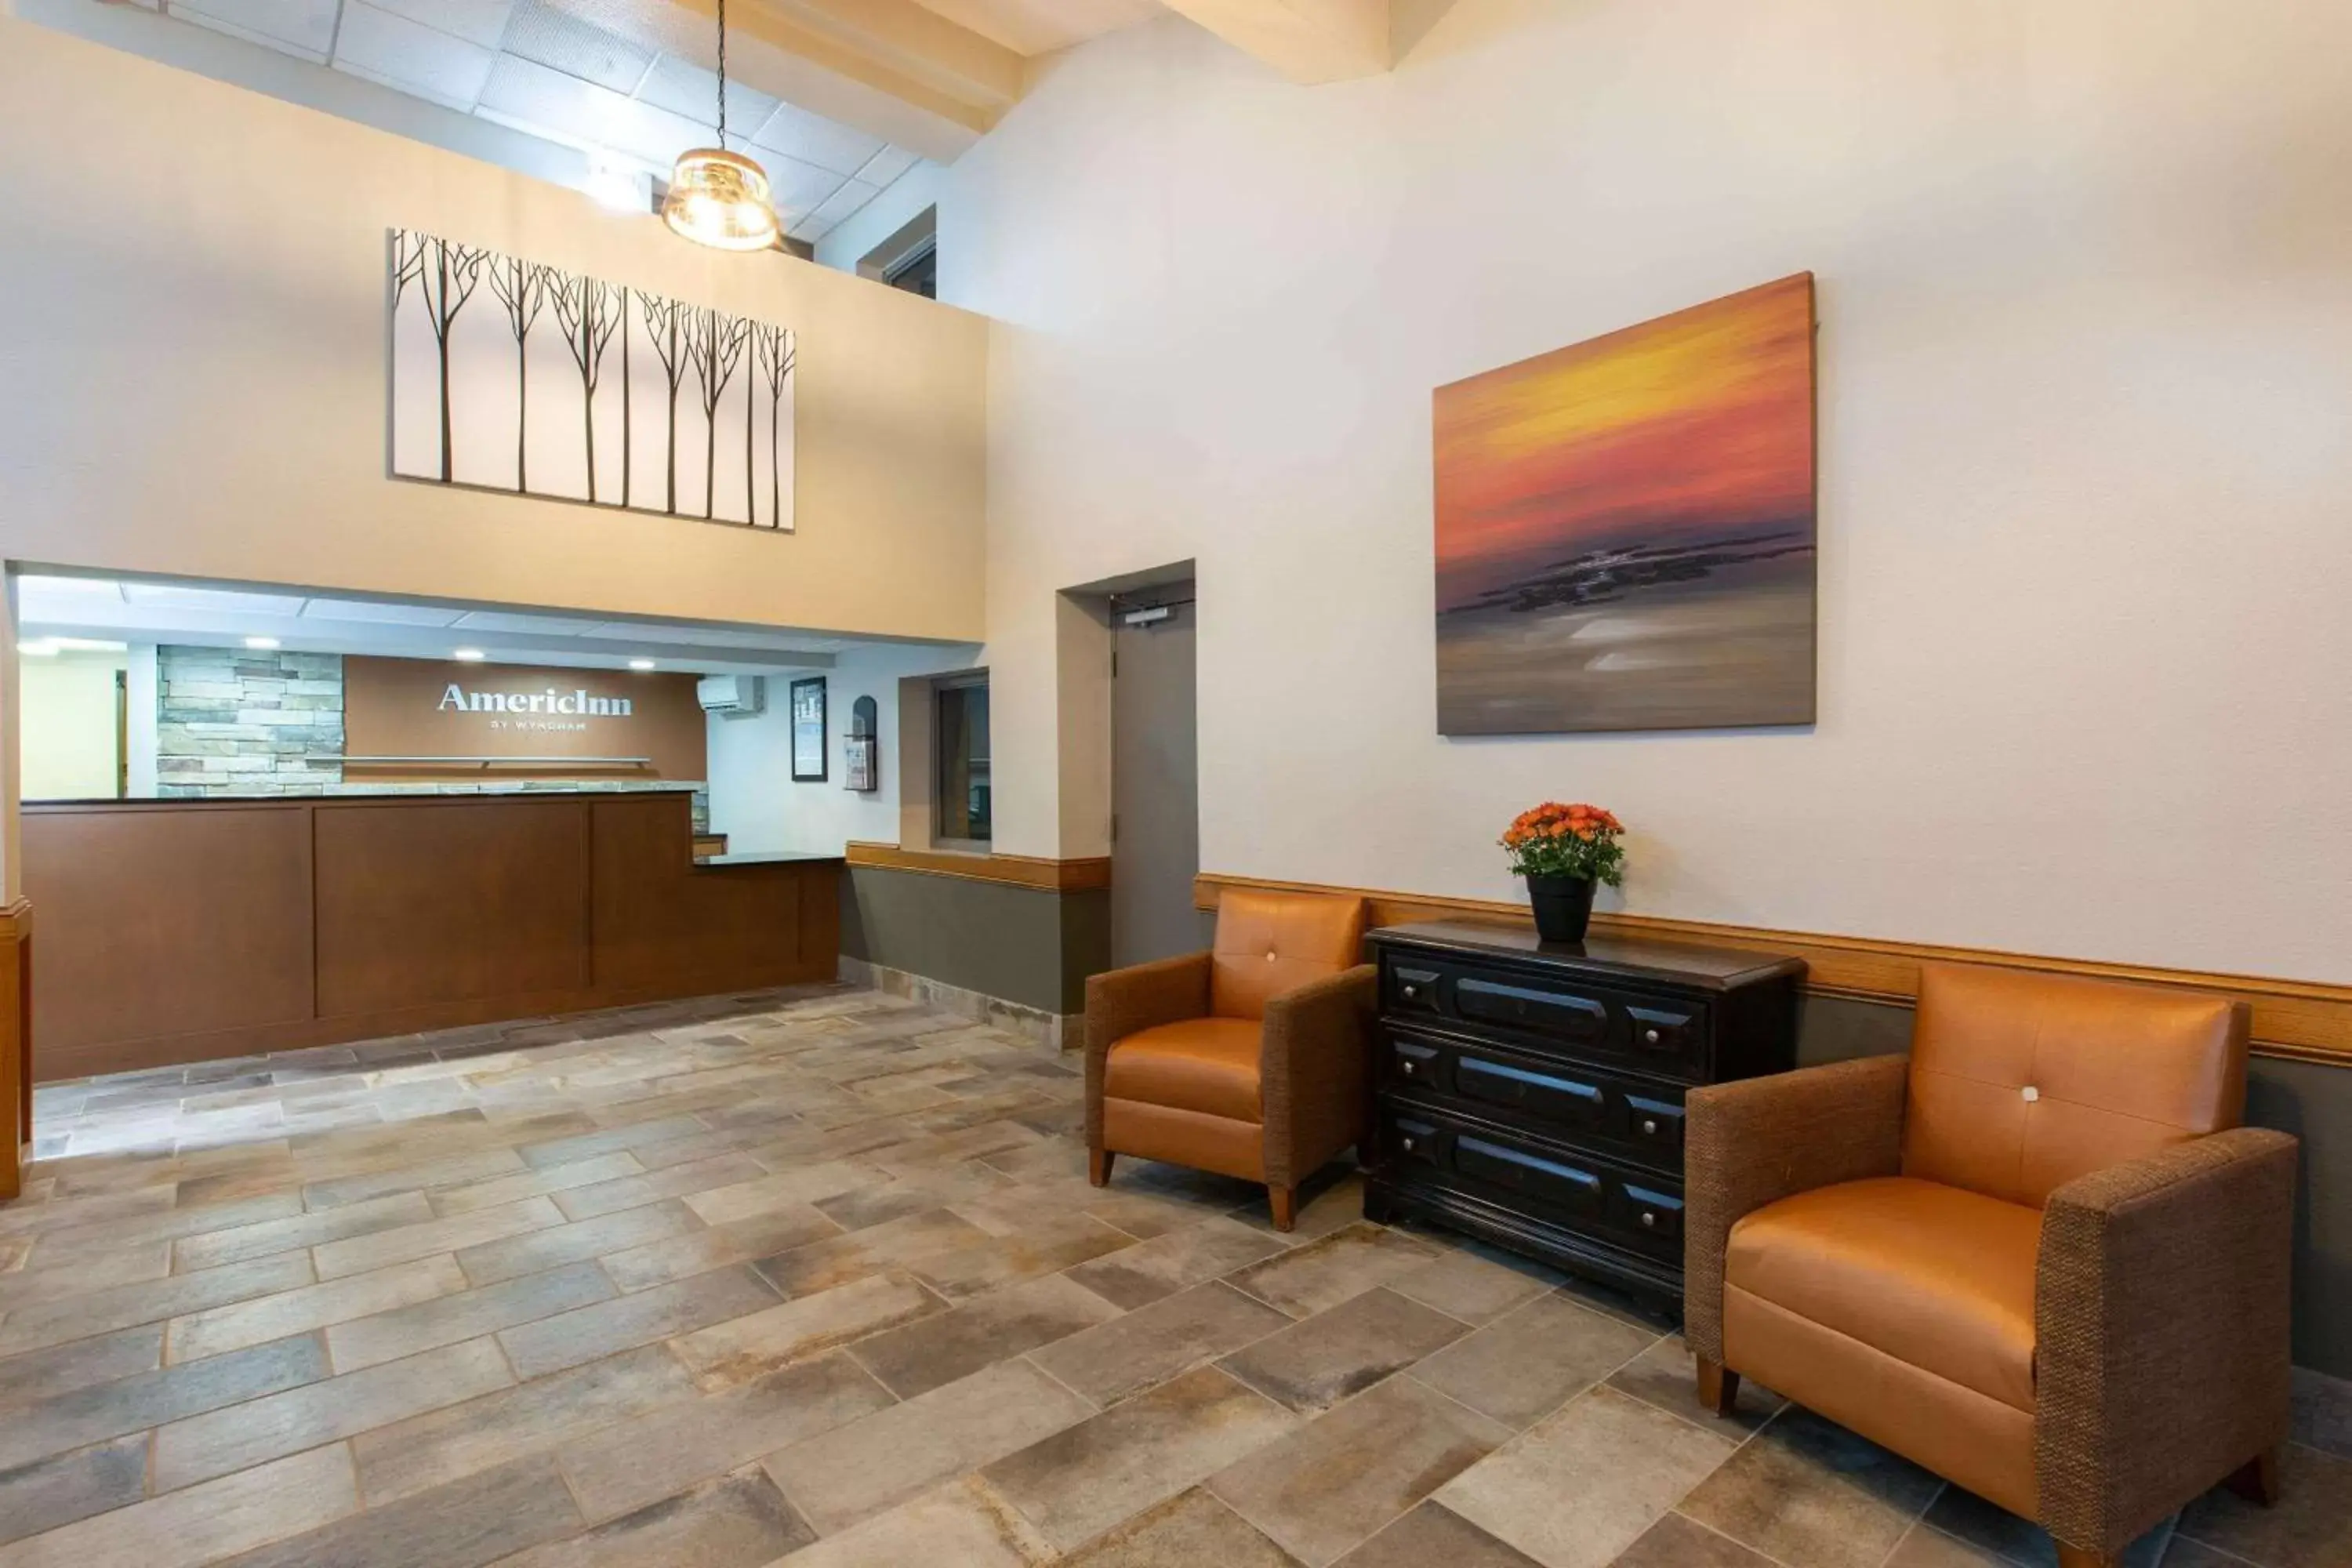 Lobby or reception, Lobby/Reception in AmericInn by Wyndham Apple Valley